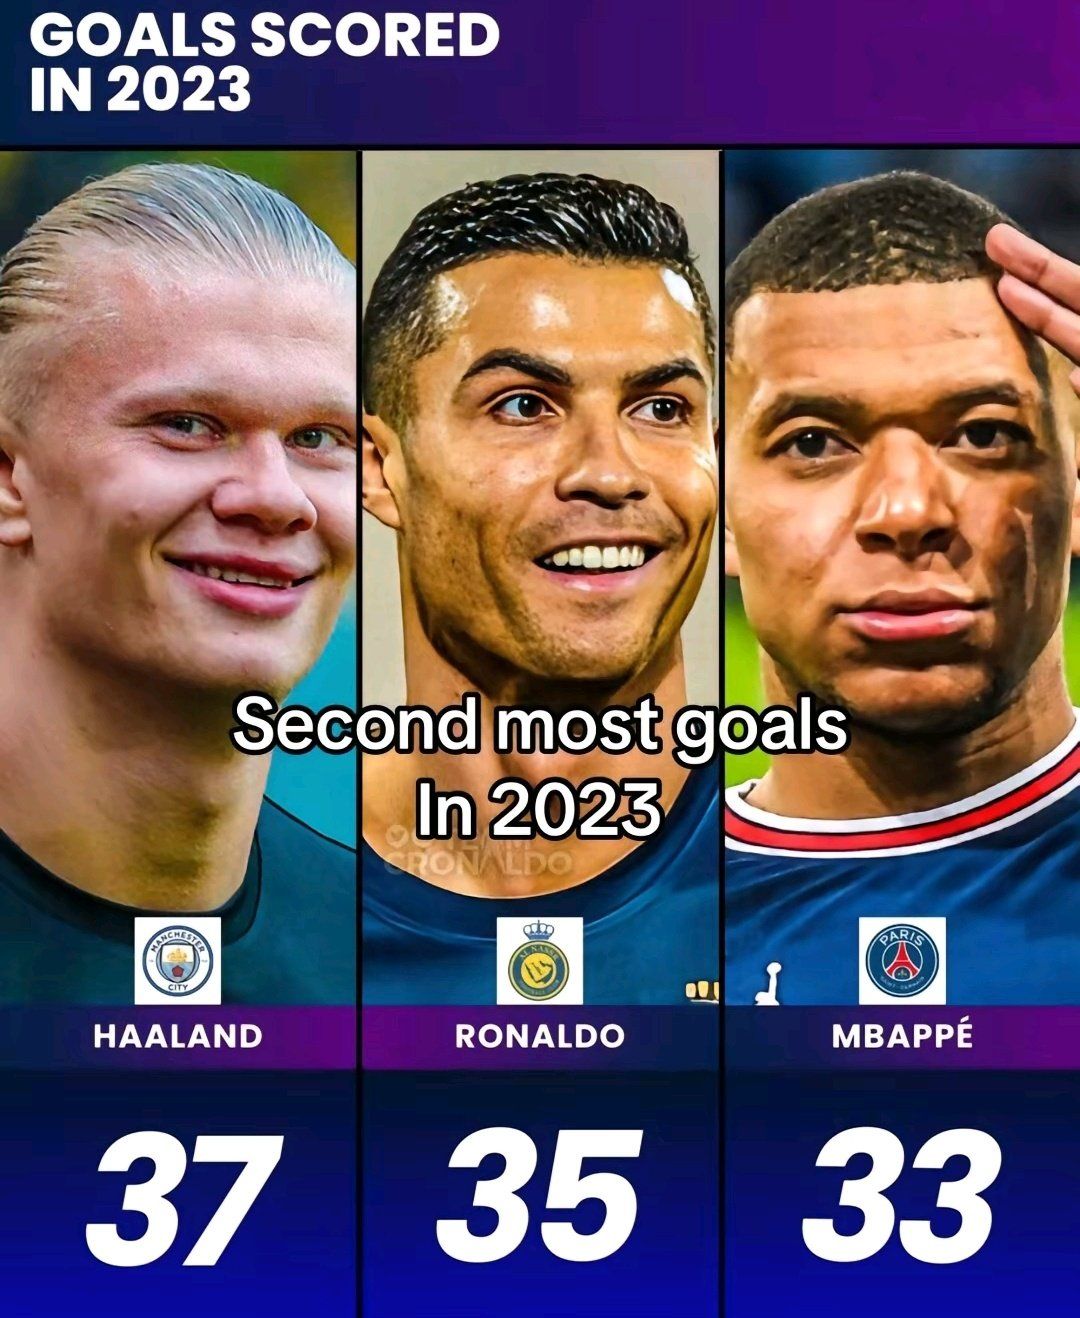 Máximo goleador del 2023: Cristiano Ronaldo, Kylian Mbappe y Erling Haaland  pelean por el título, Deportes